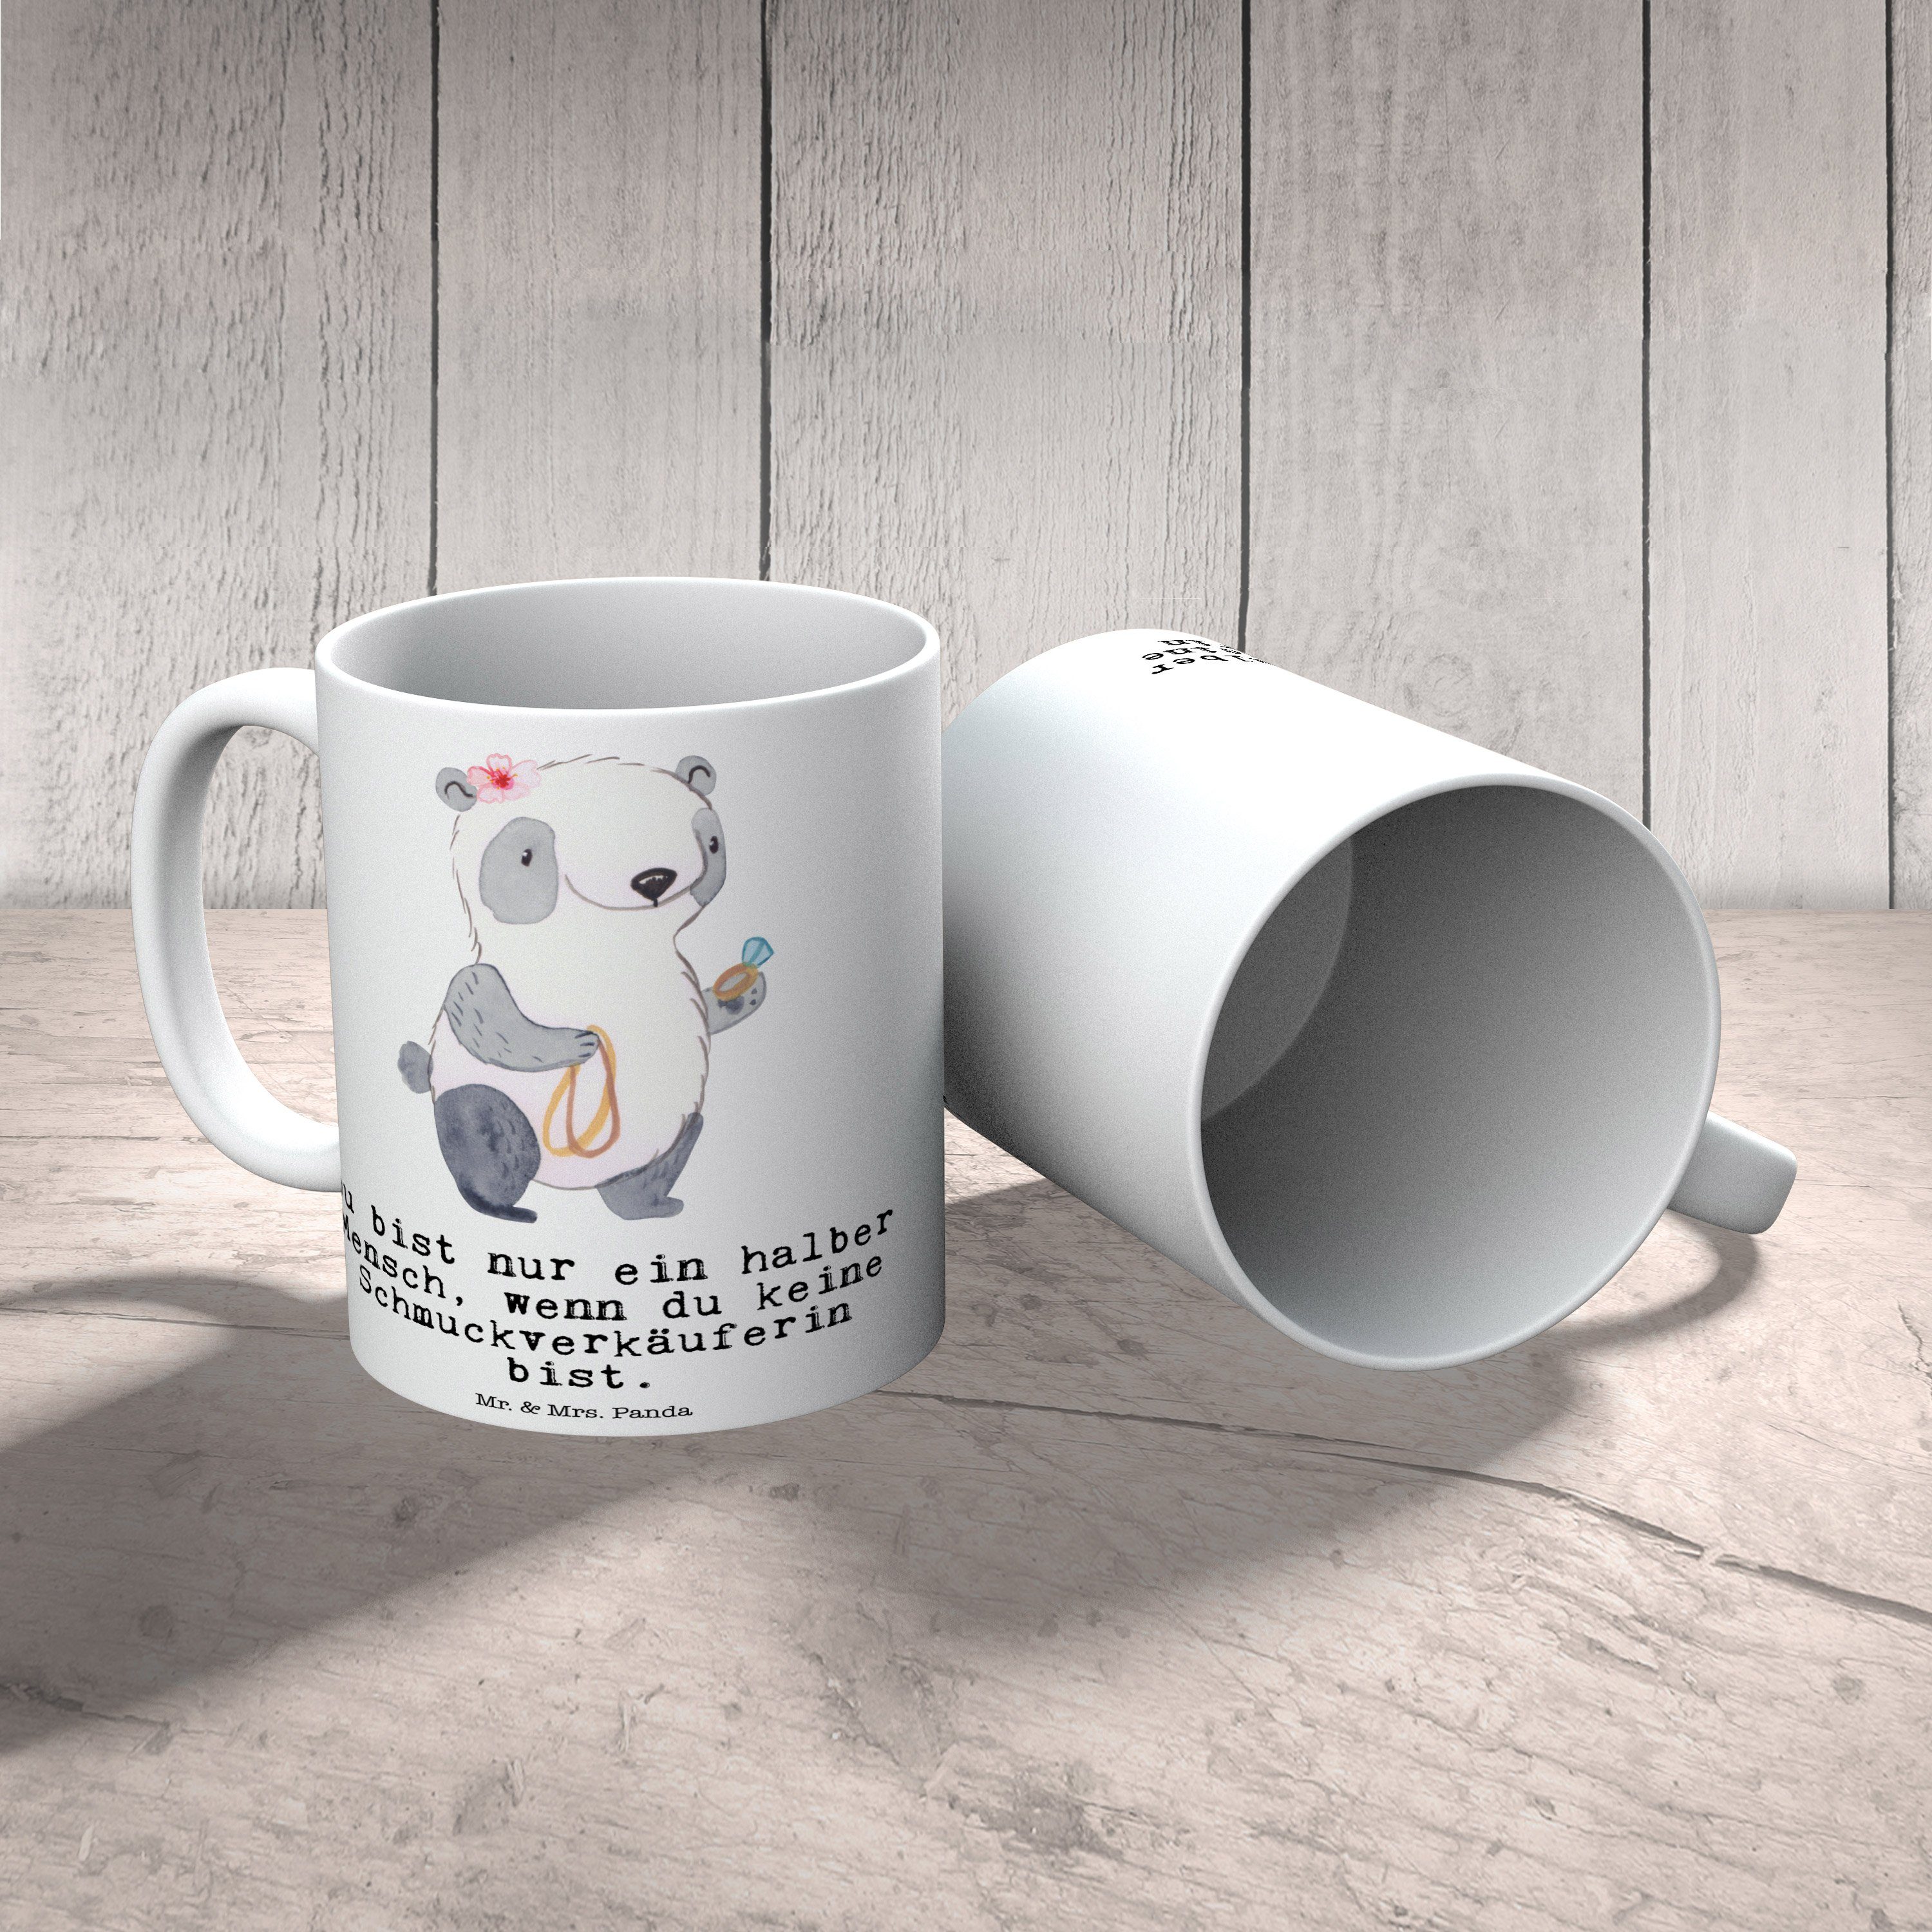 Schmuckgeschäft, Panda Mr. Schmuckverkäuferin Mrs. - Keramik Geschenk, - & Keram, mit Herz Weiß Tasse